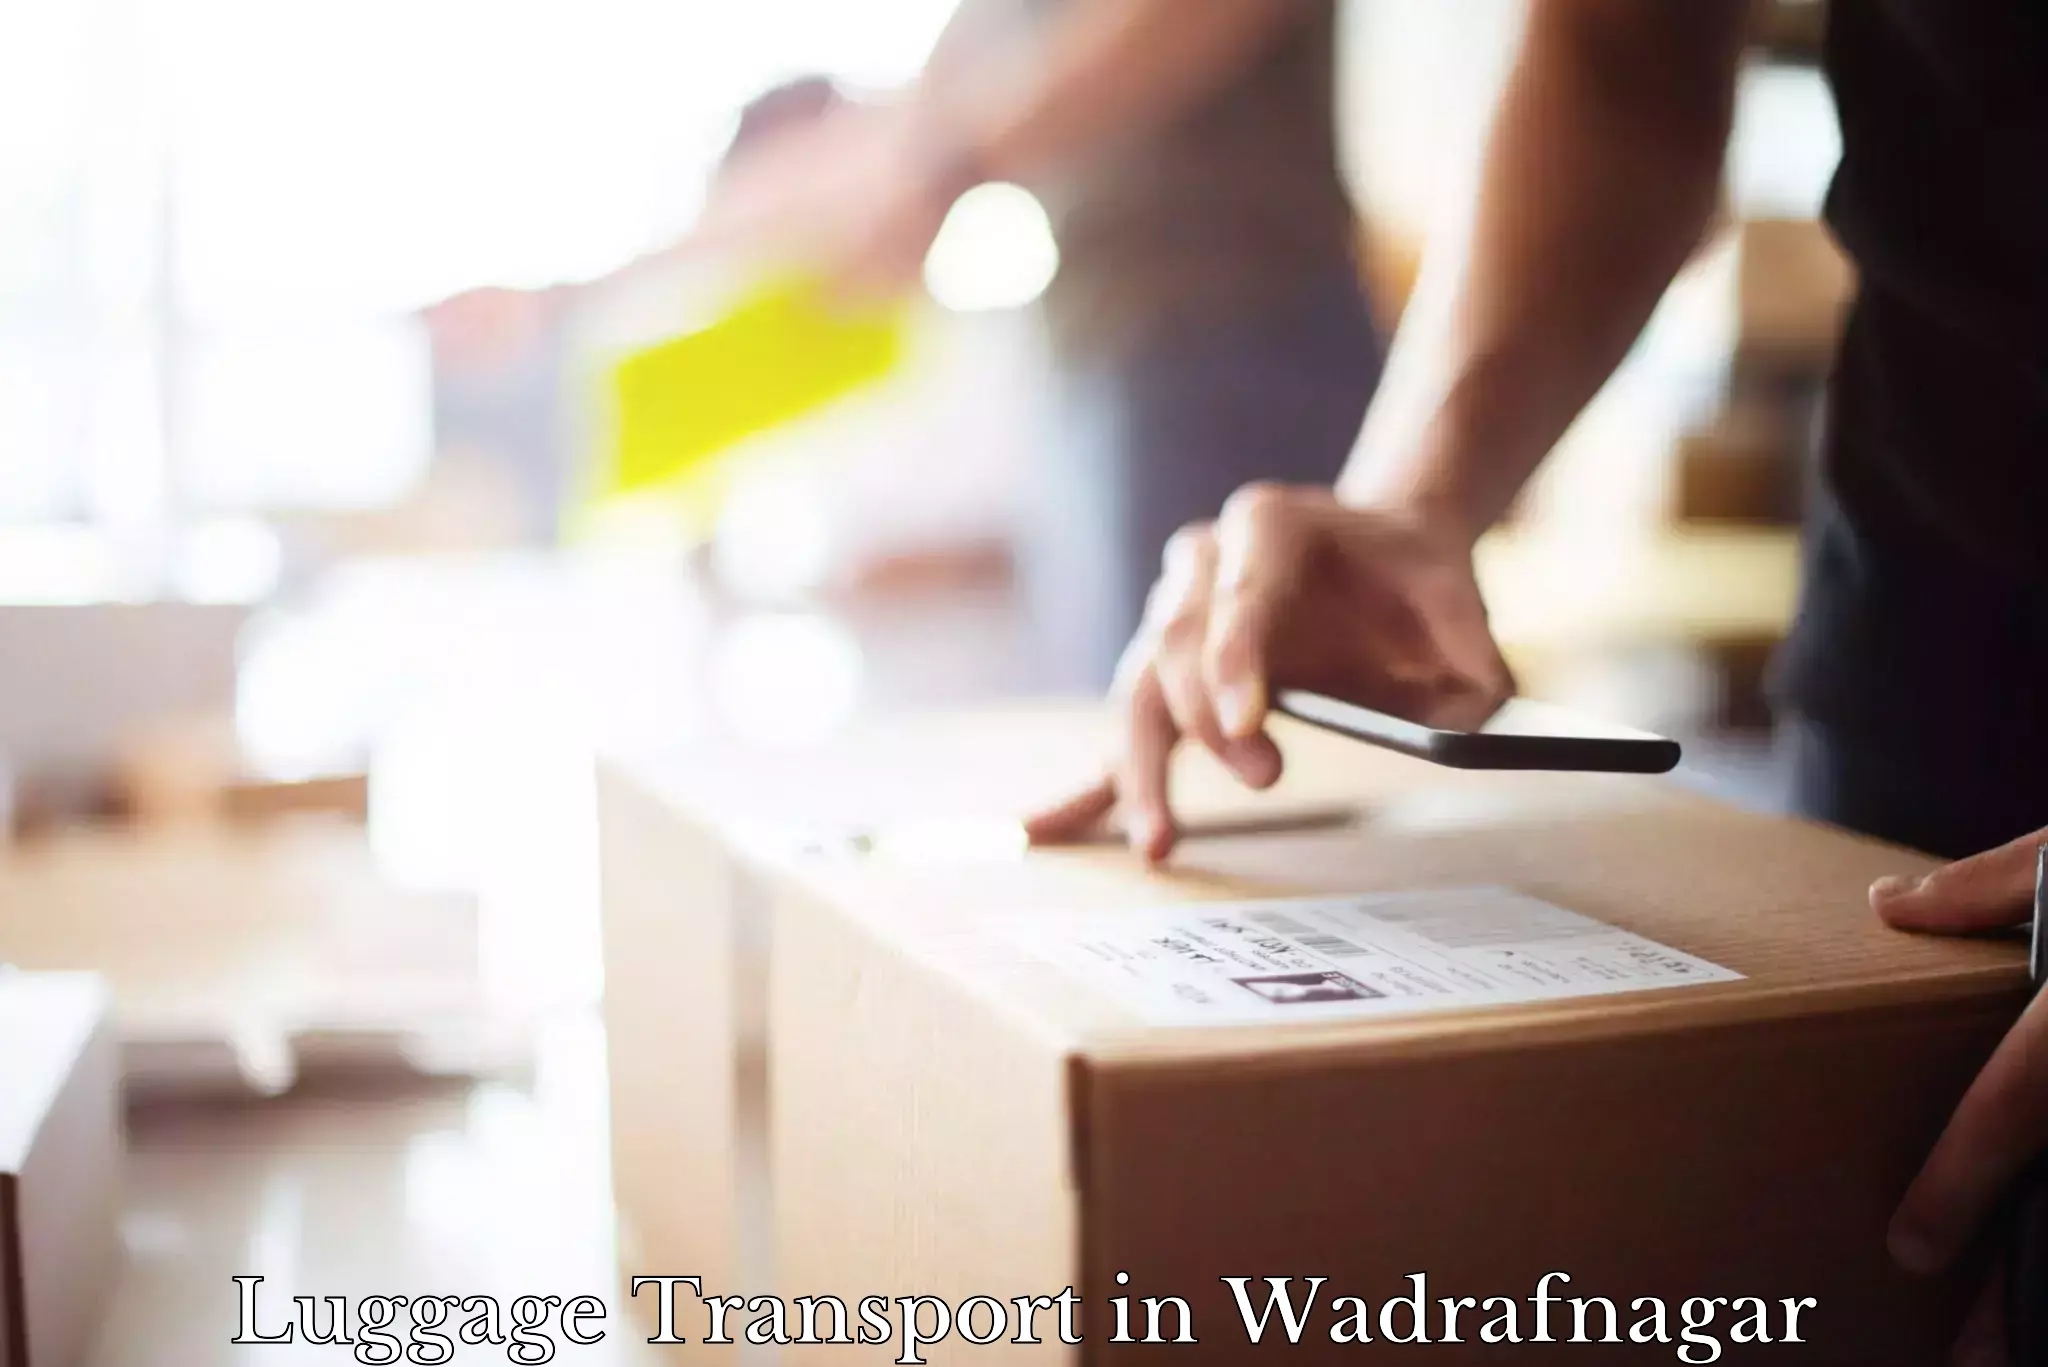 Luggage transport logistics in Wadrafnagar